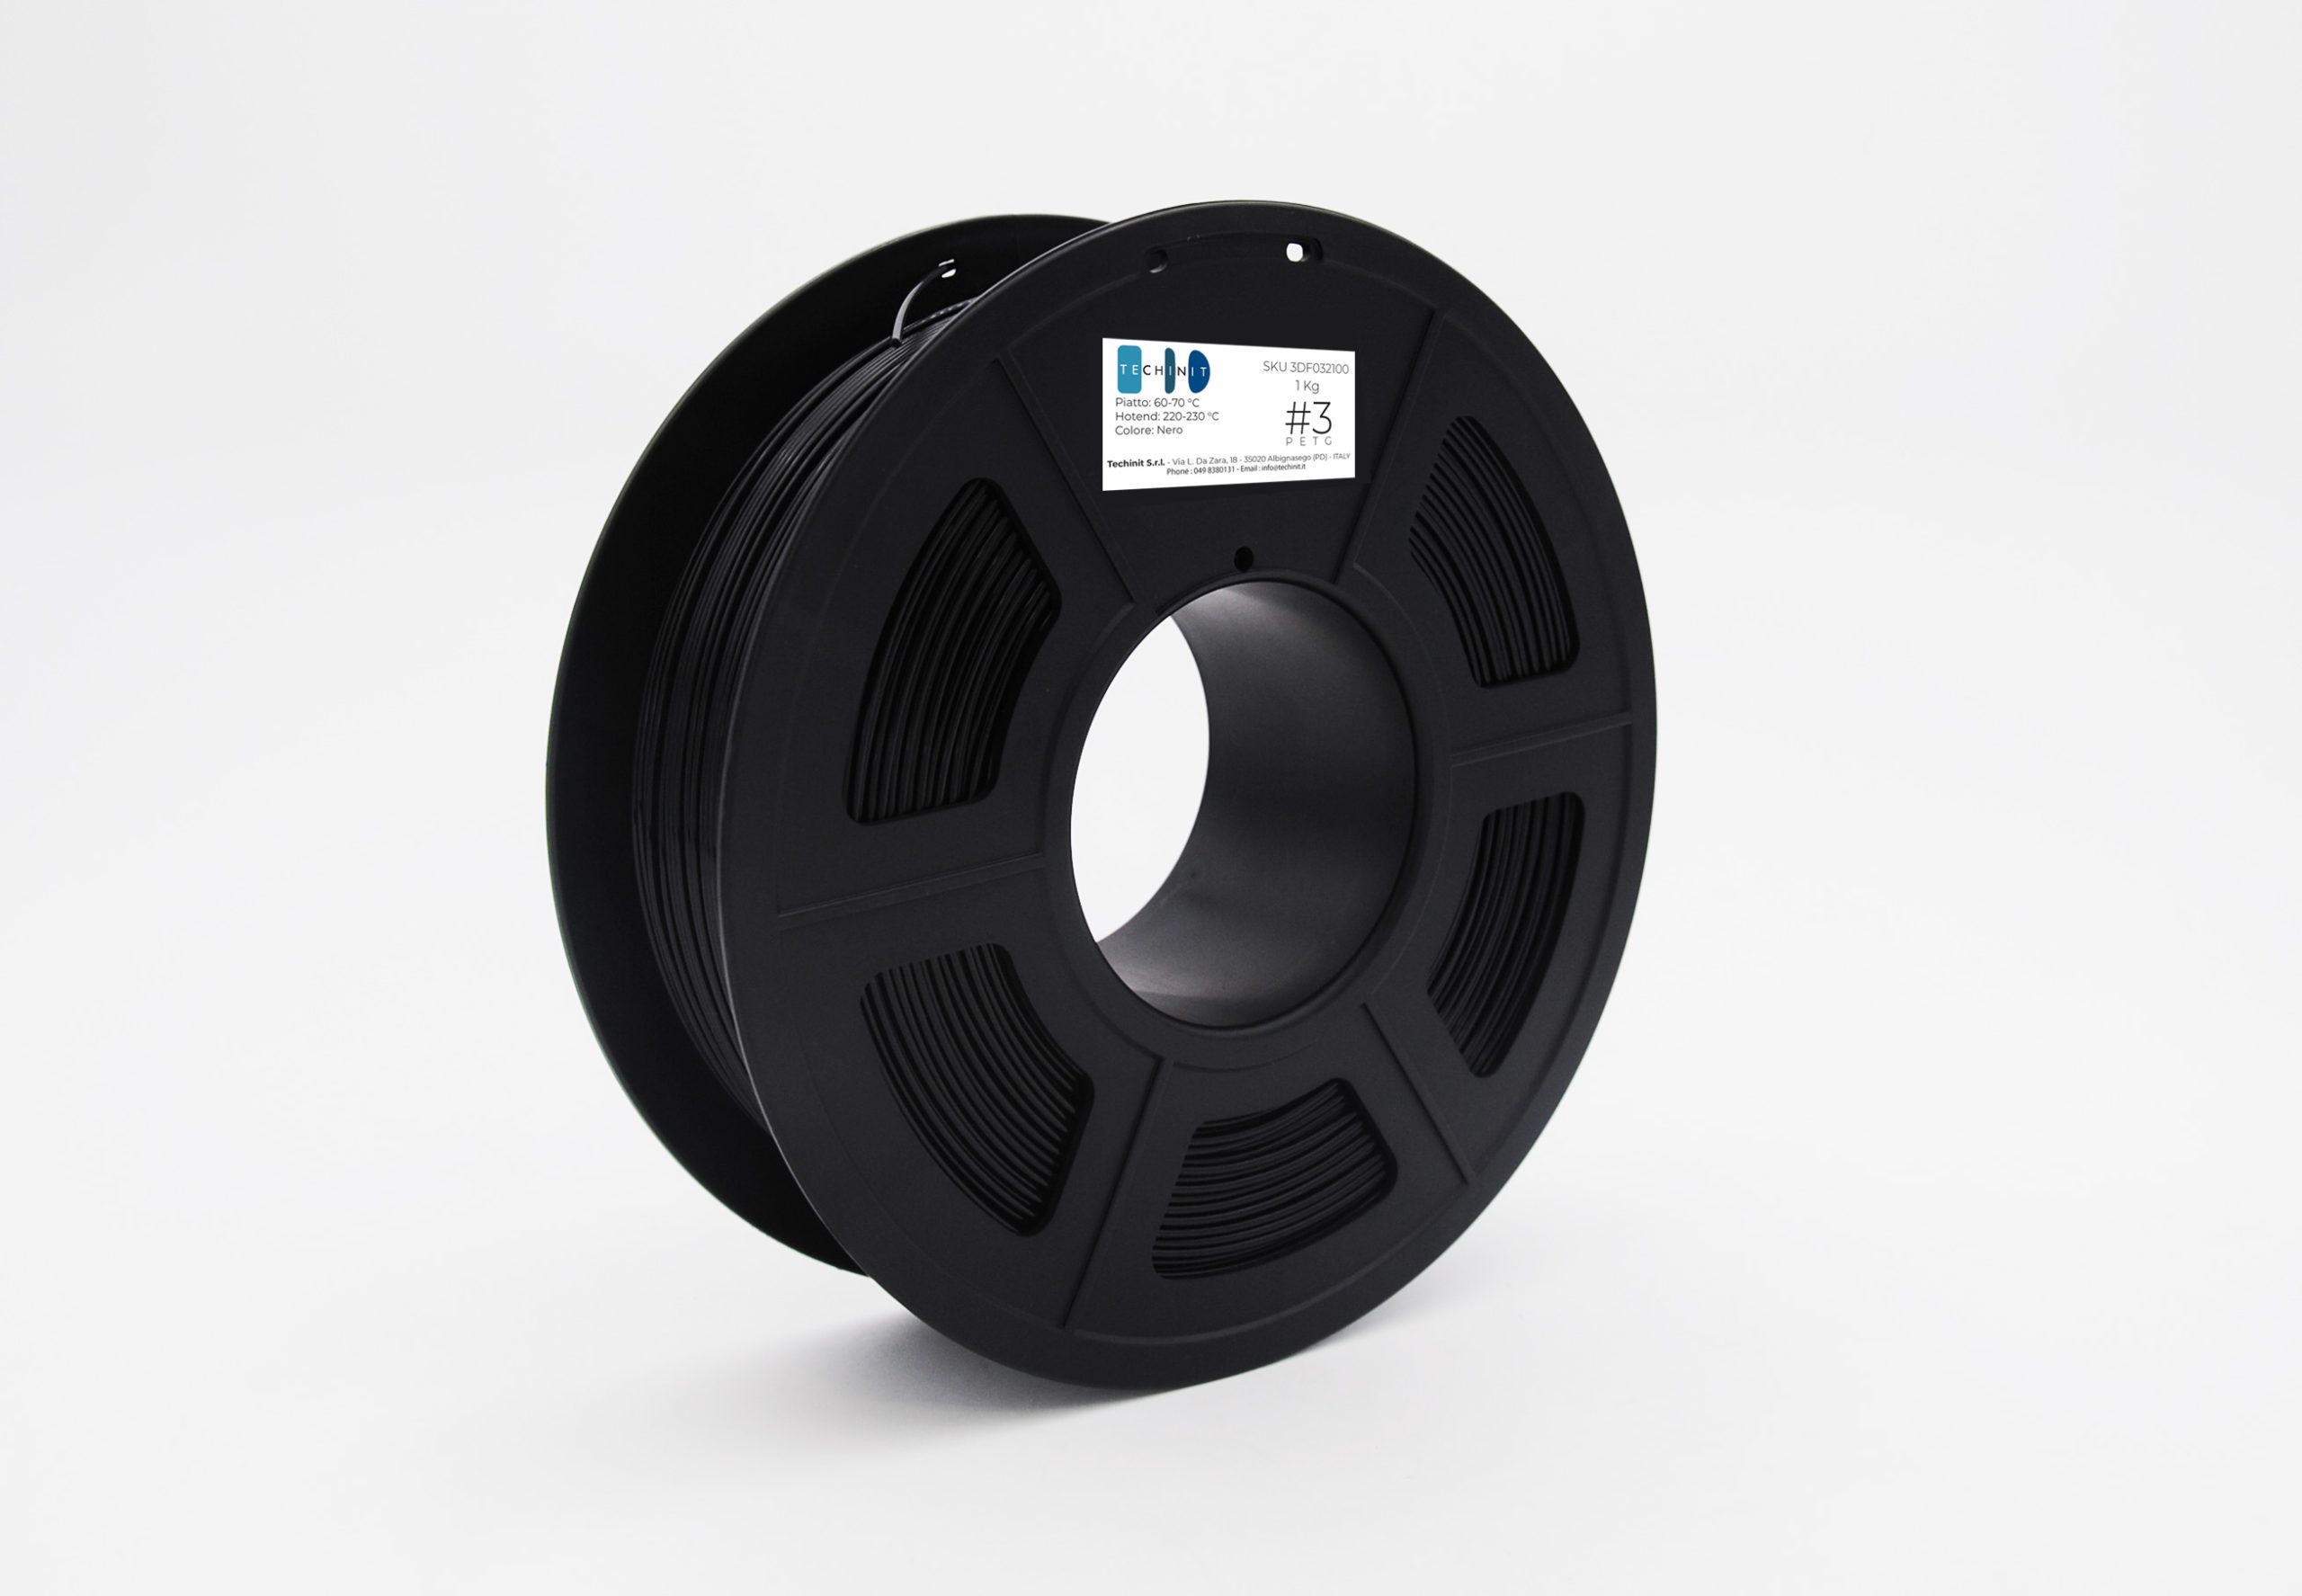 Techinit #3 - Filamento in PETG per stampante 3D - Ø 1.75 mm - Colore nero  - Bobina da 1 kg